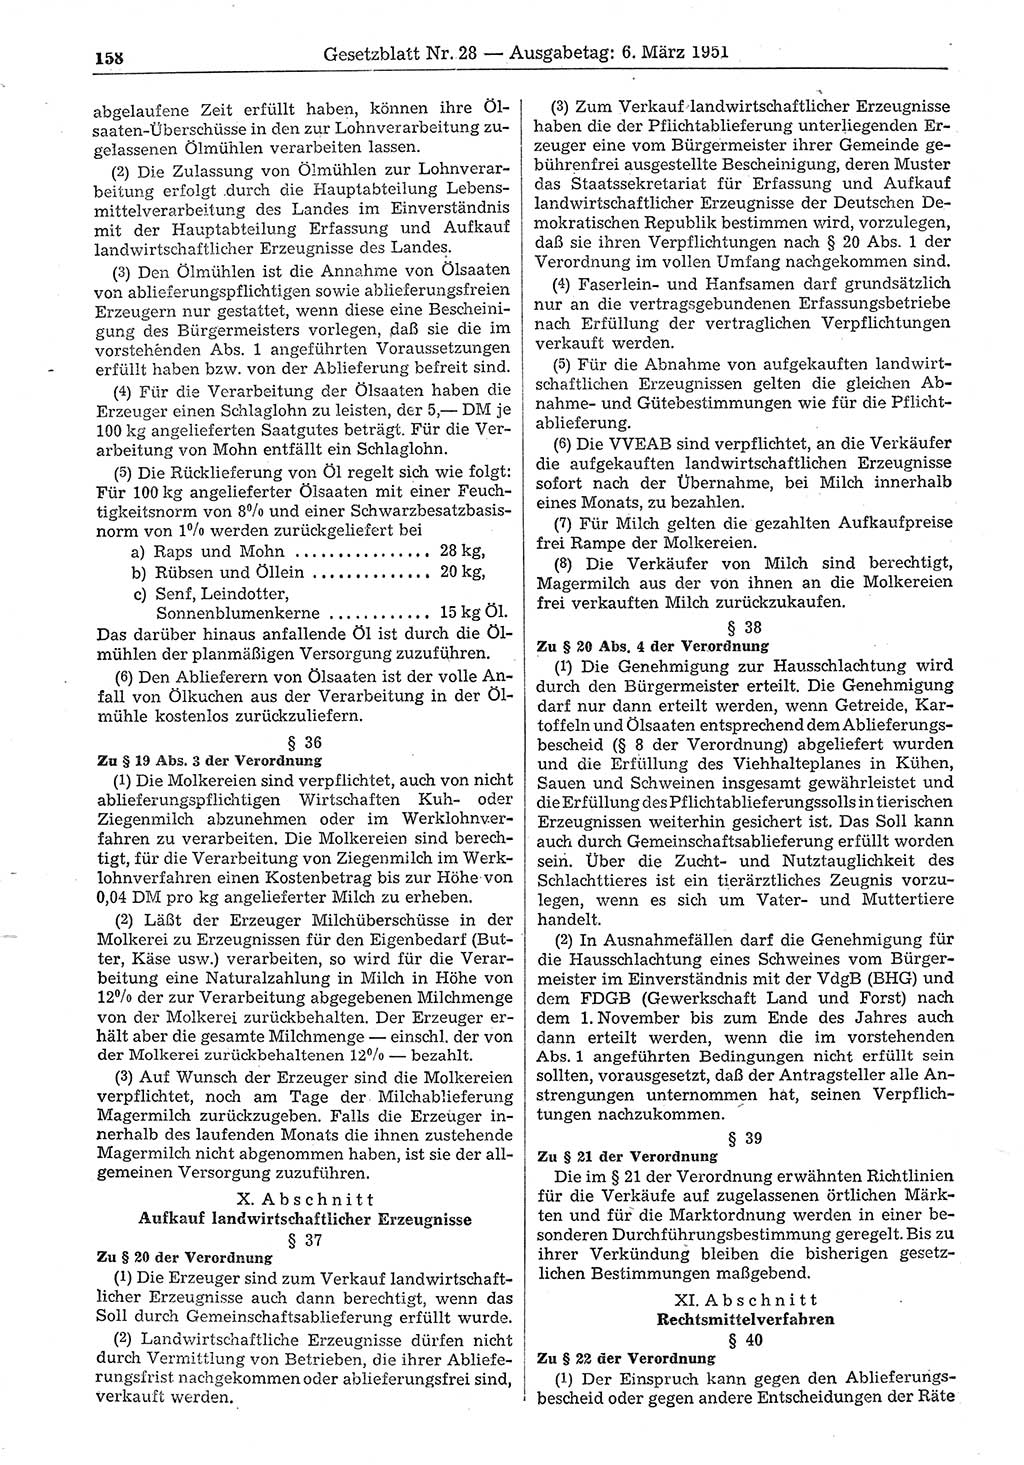 Gesetzblatt (GBl.) der Deutschen Demokratischen Republik (DDR) 1951, Seite 158 (GBl. DDR 1951, S. 158)